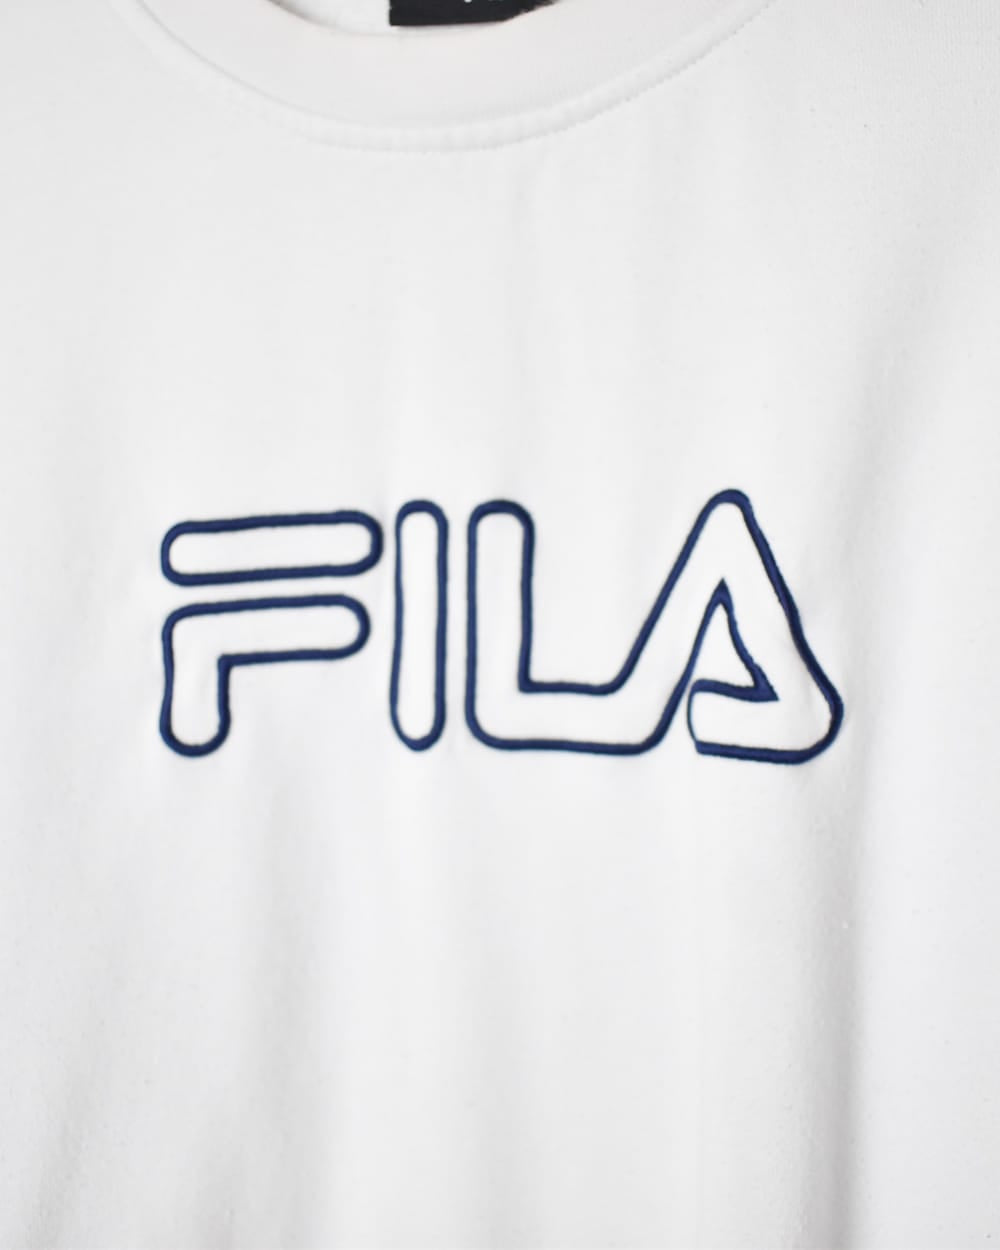 White Fila Sweatshirt - Medium